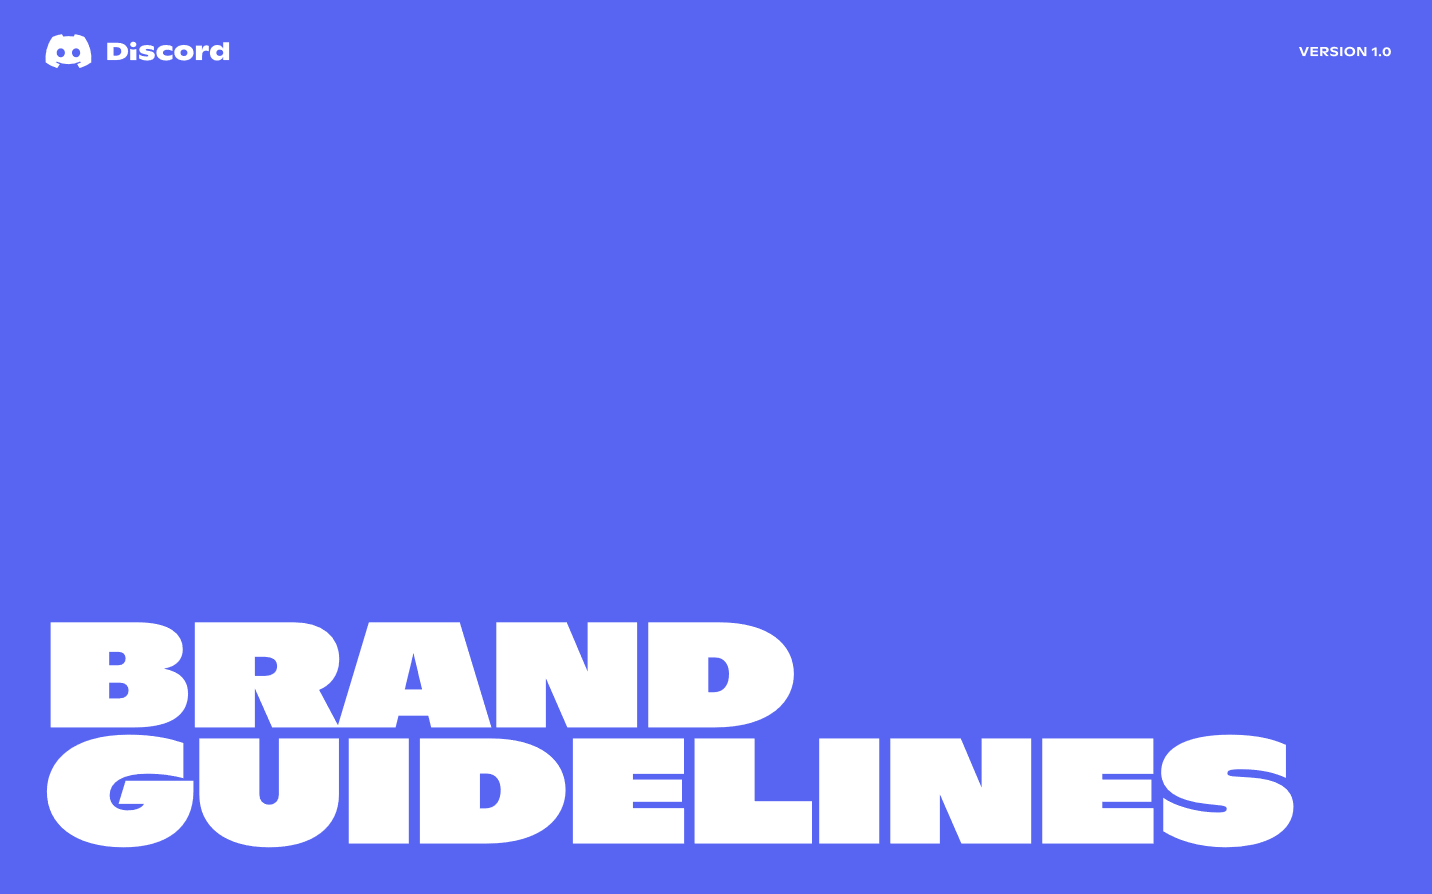 Discord's Brand Guide